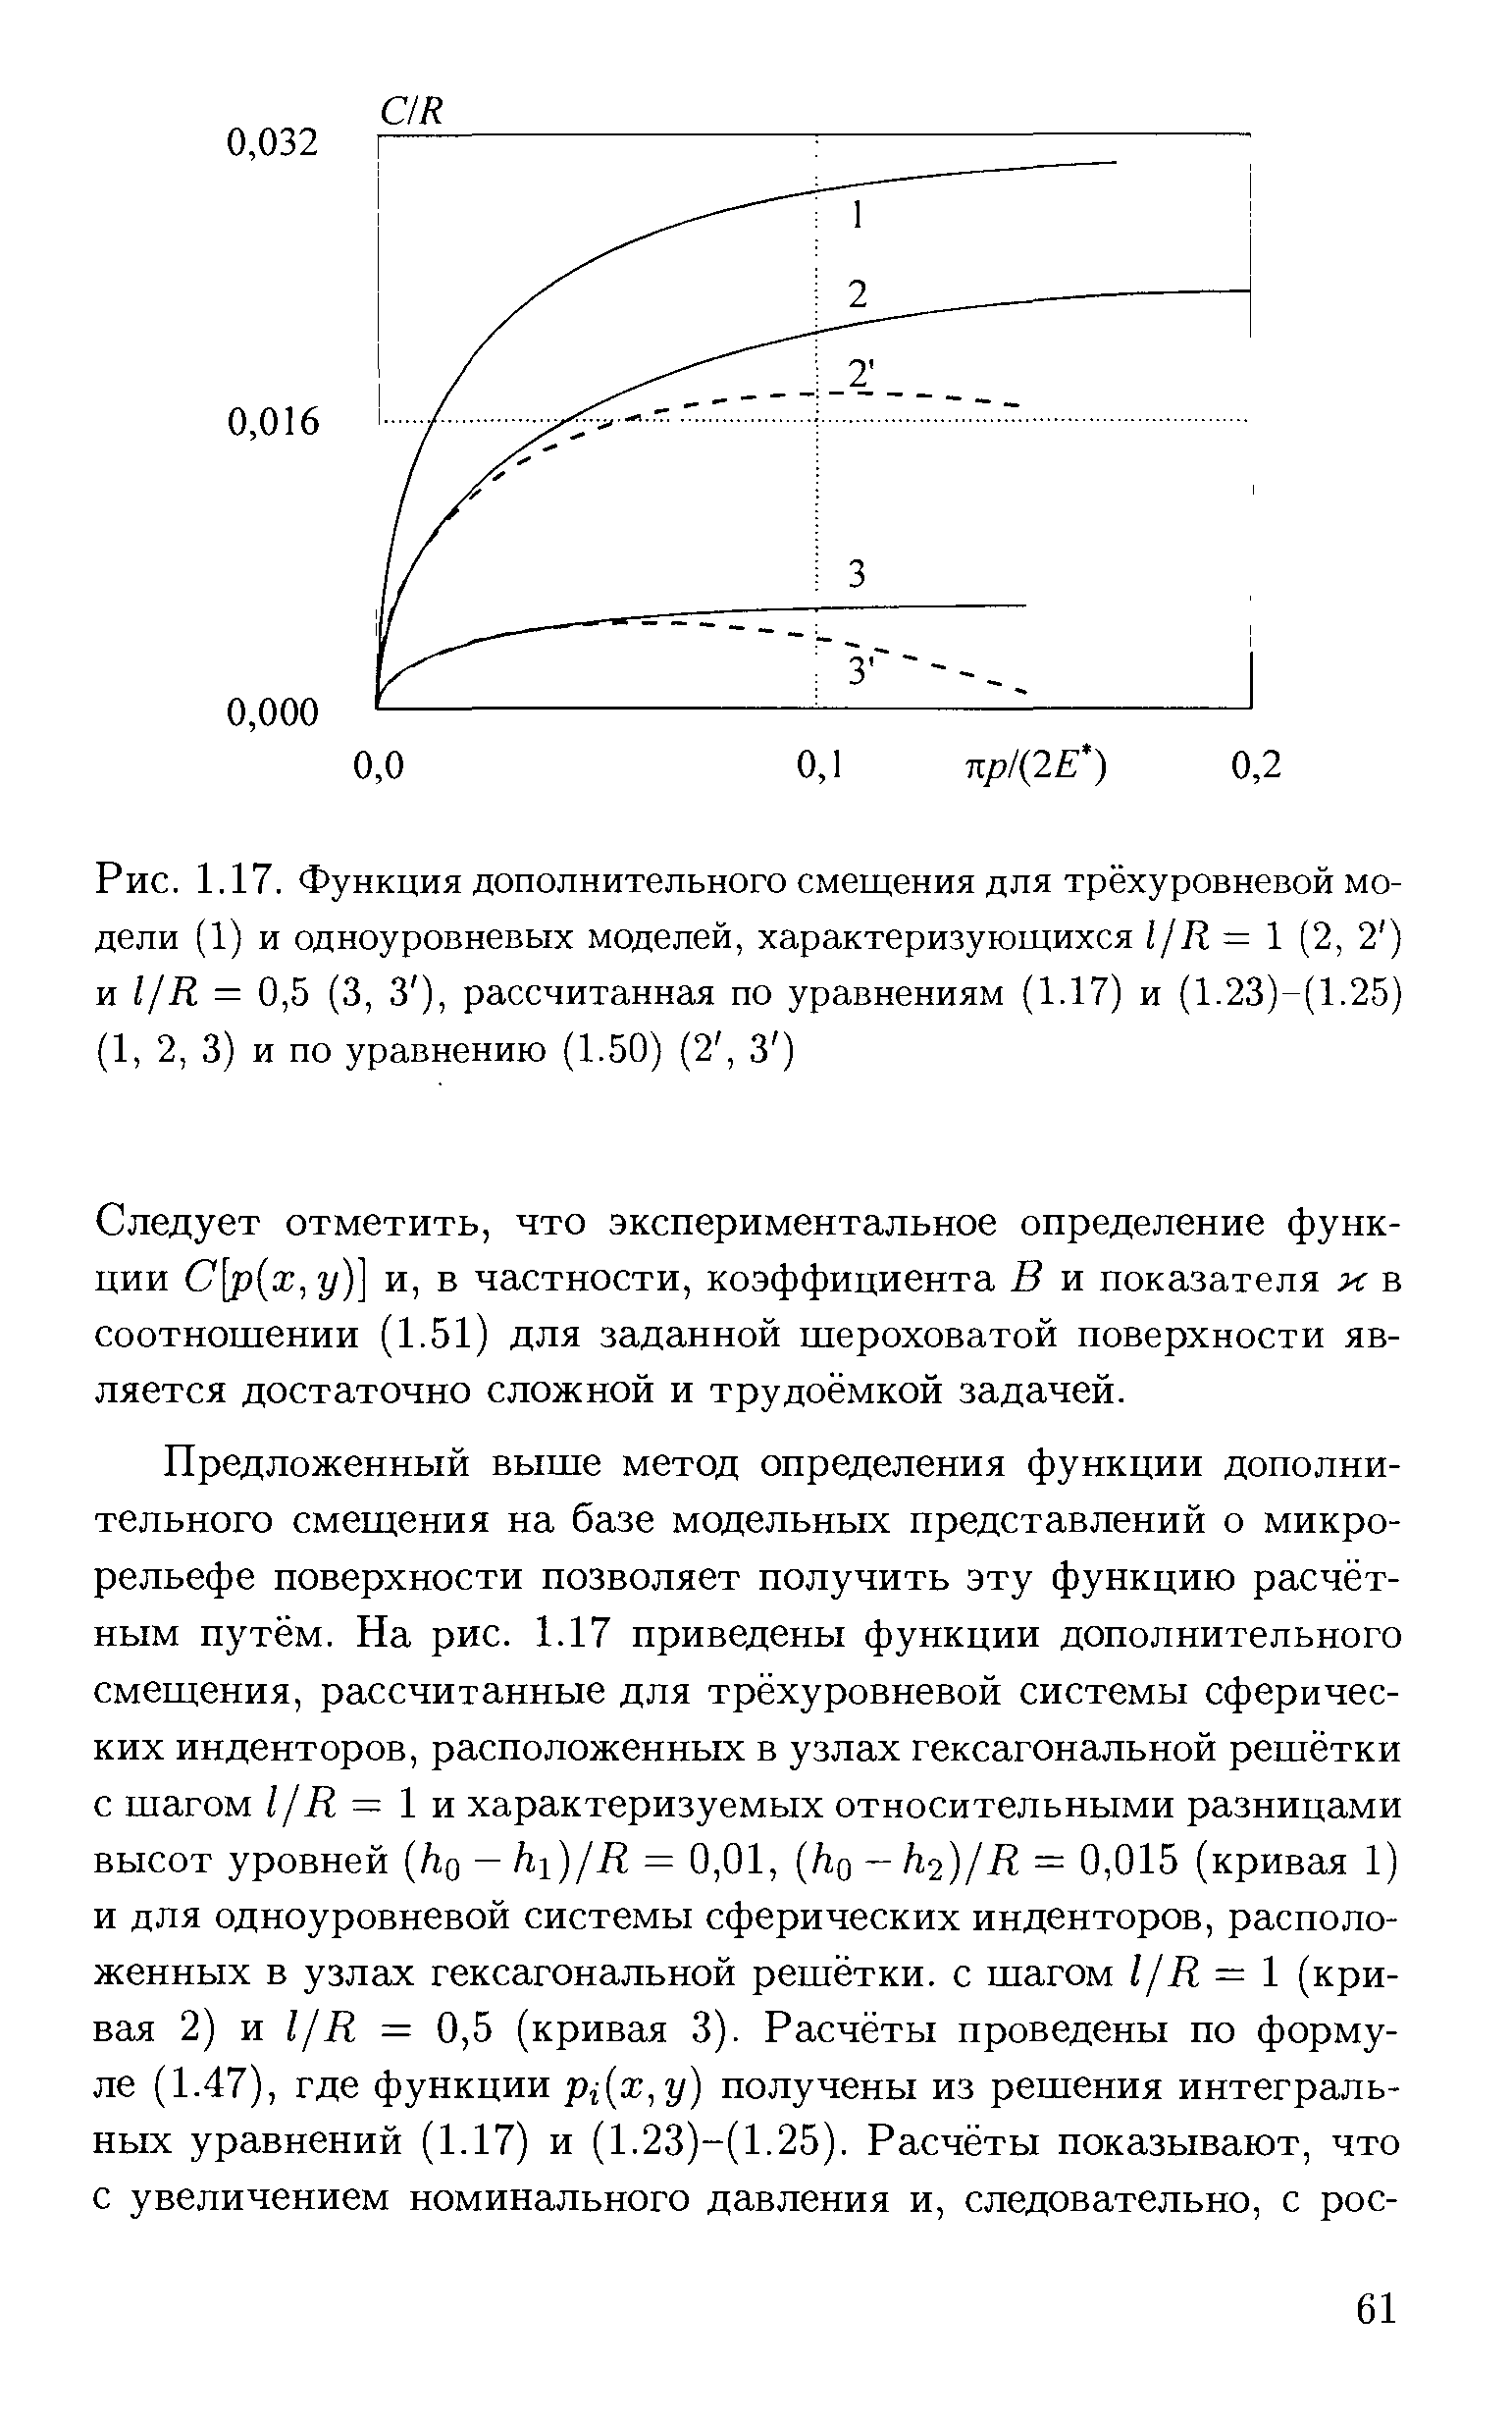 Рис. 1.17. Функция дополнительного смещения для трёхуровневой модели (1) и одноуровневых моделей, характеризующихся ljR= (2, 2 ) и 1/R = 0,5 (3, 3 ), рассчитанная по уравнениям (1.17) и (1.23)-(1.25) (1, 2, 3) и по уравнению (1.50) (2, 3 )
